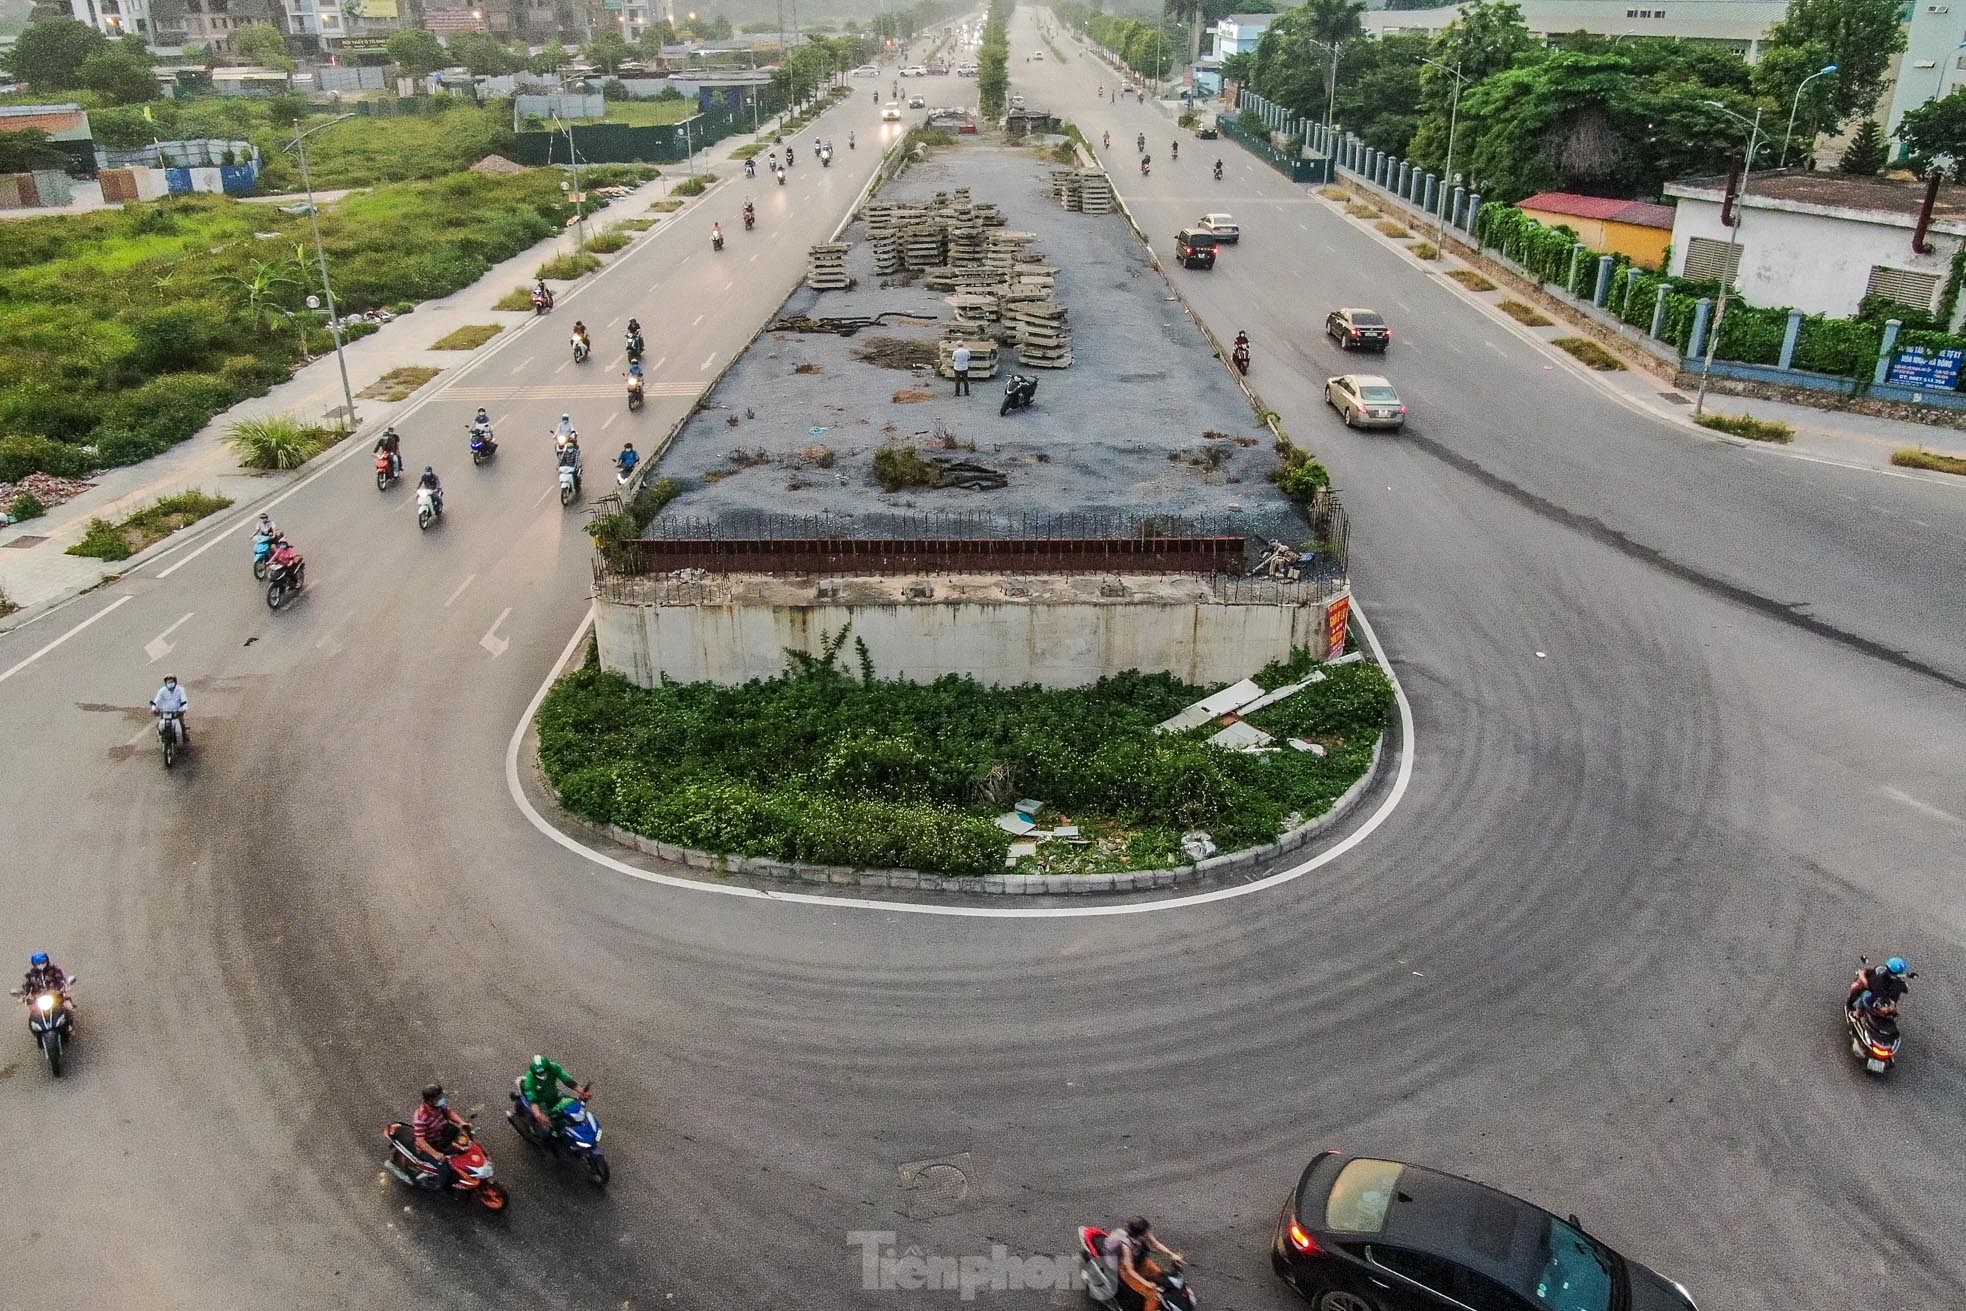 Cầu vượt bỏ hoang trên đại lộ nghìn tỷ ở Hà Nội - Ảnh 3.